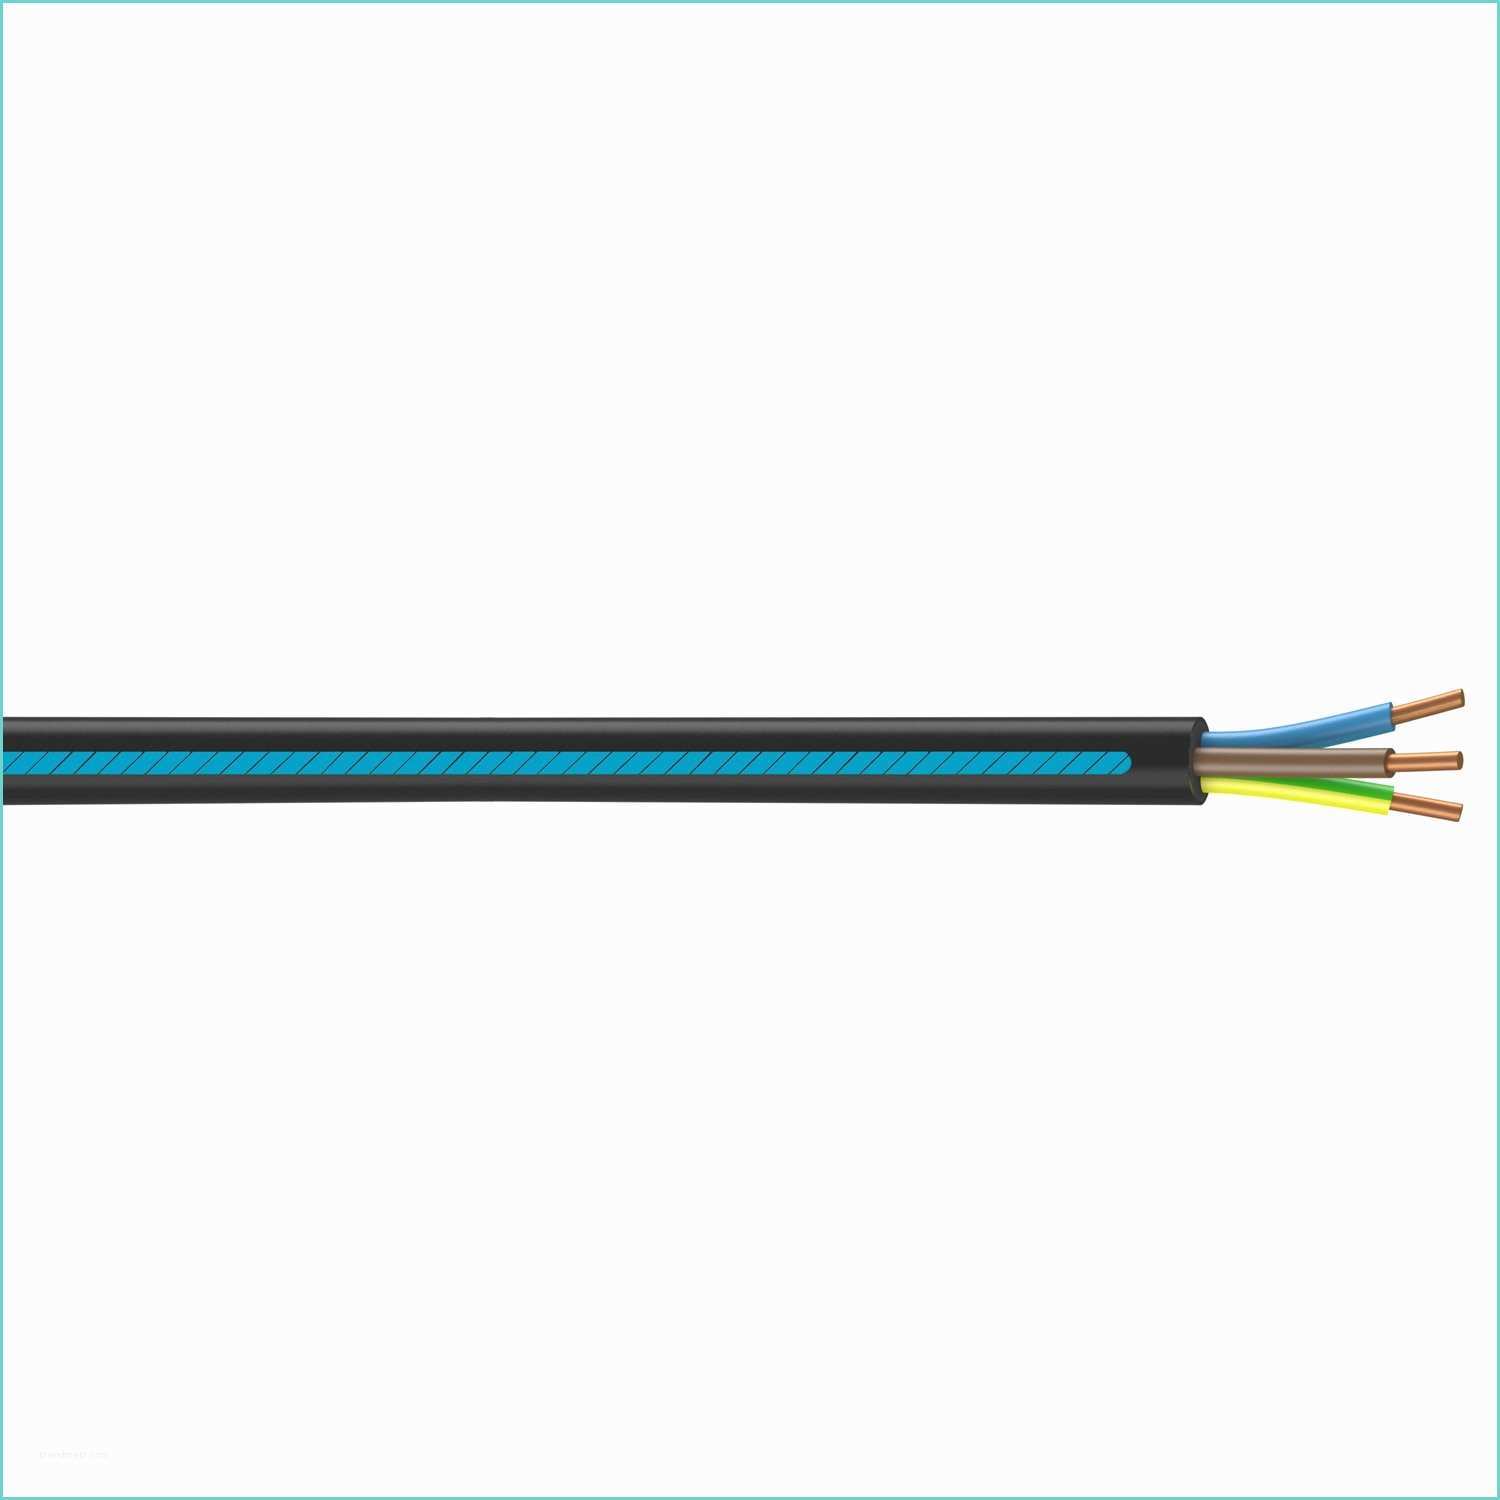 Cable Inox 4mm Leroy Merlin Câble électrique U1000r2v Noir L 25 M